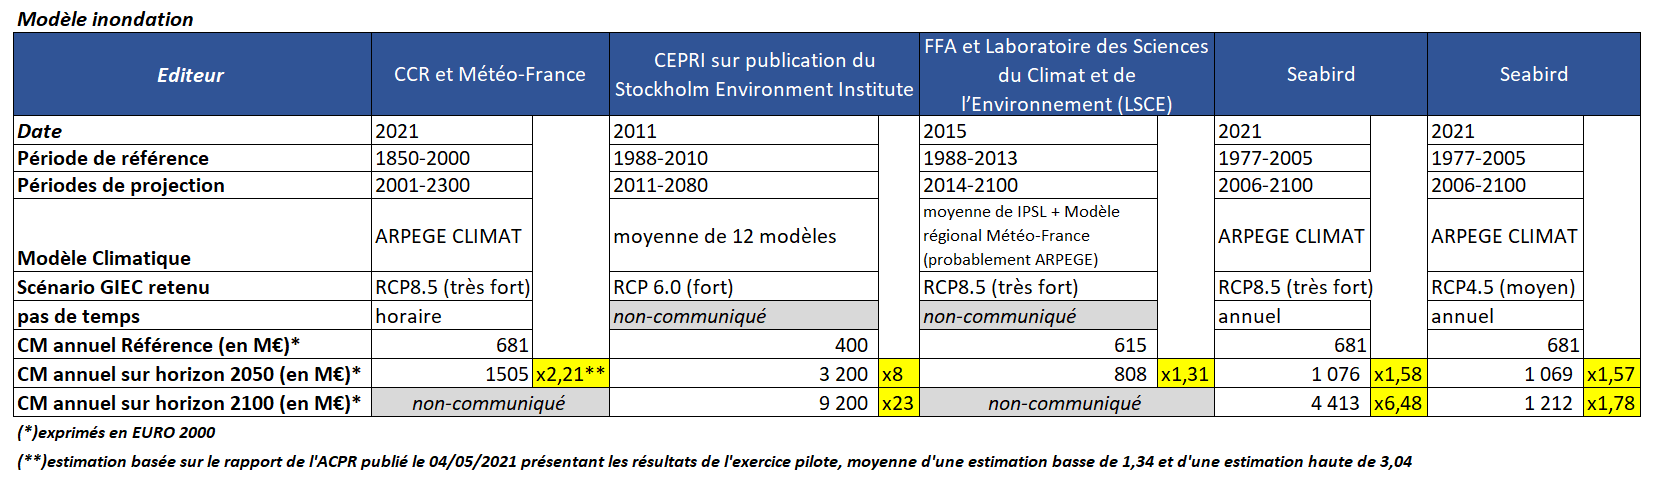 Exercice climatique ACPR : résultats au Passif - Modèle inondation